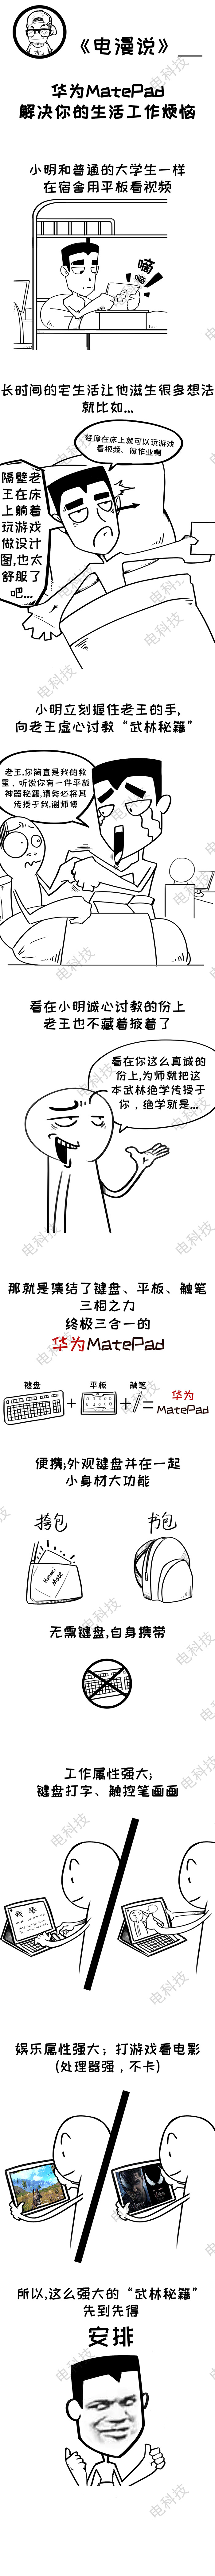 【电漫说】 真香平板来袭，华为MatePad会成为你的随身生产工具吗？